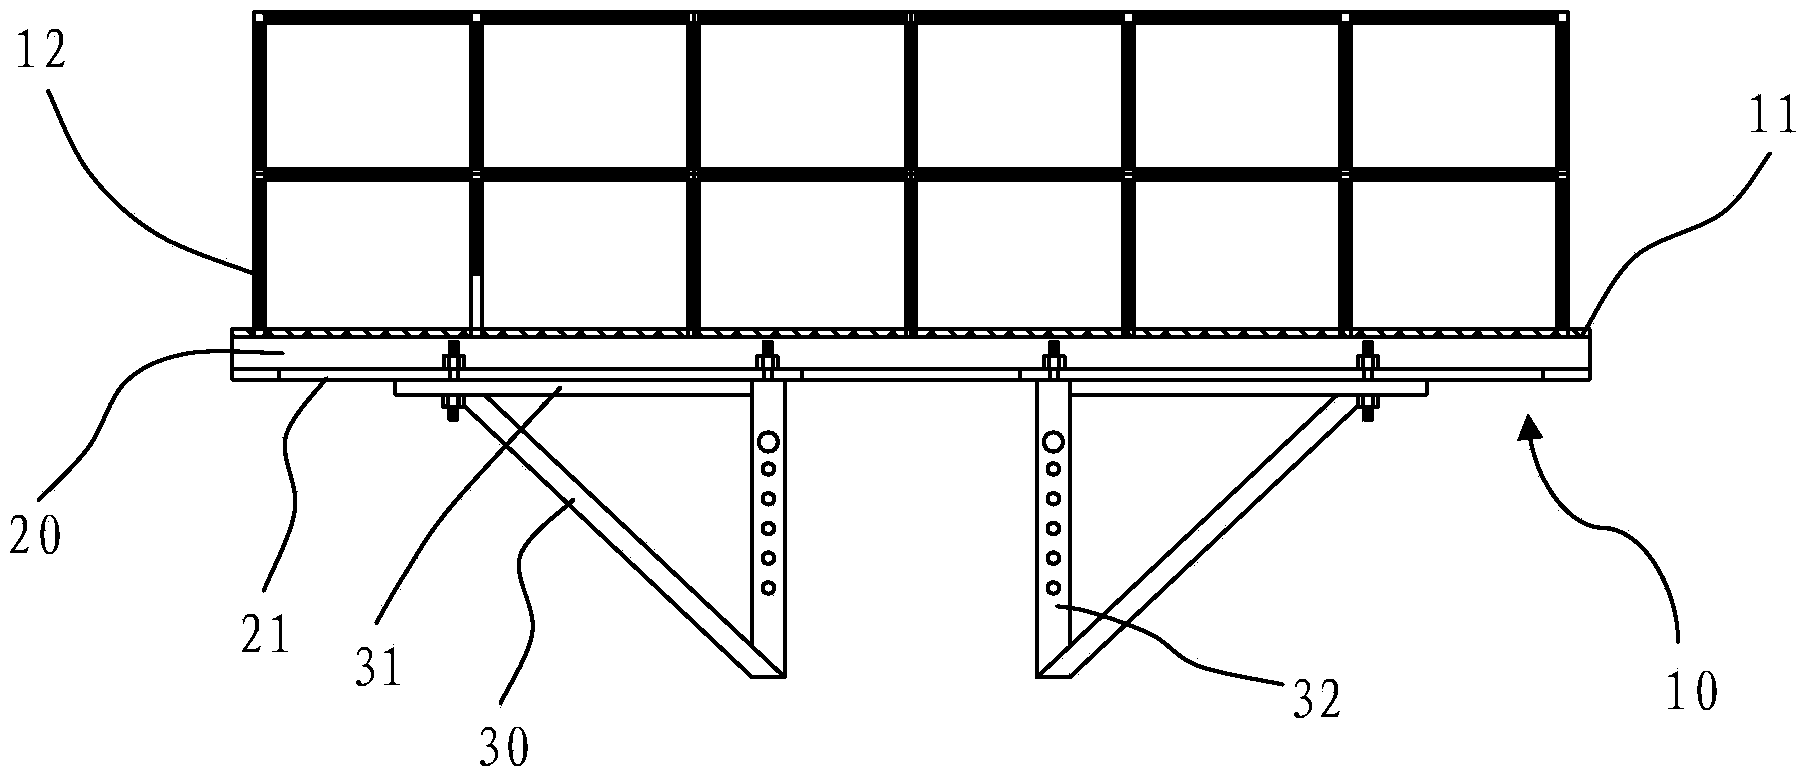 Adjustable steel pipe operation platform